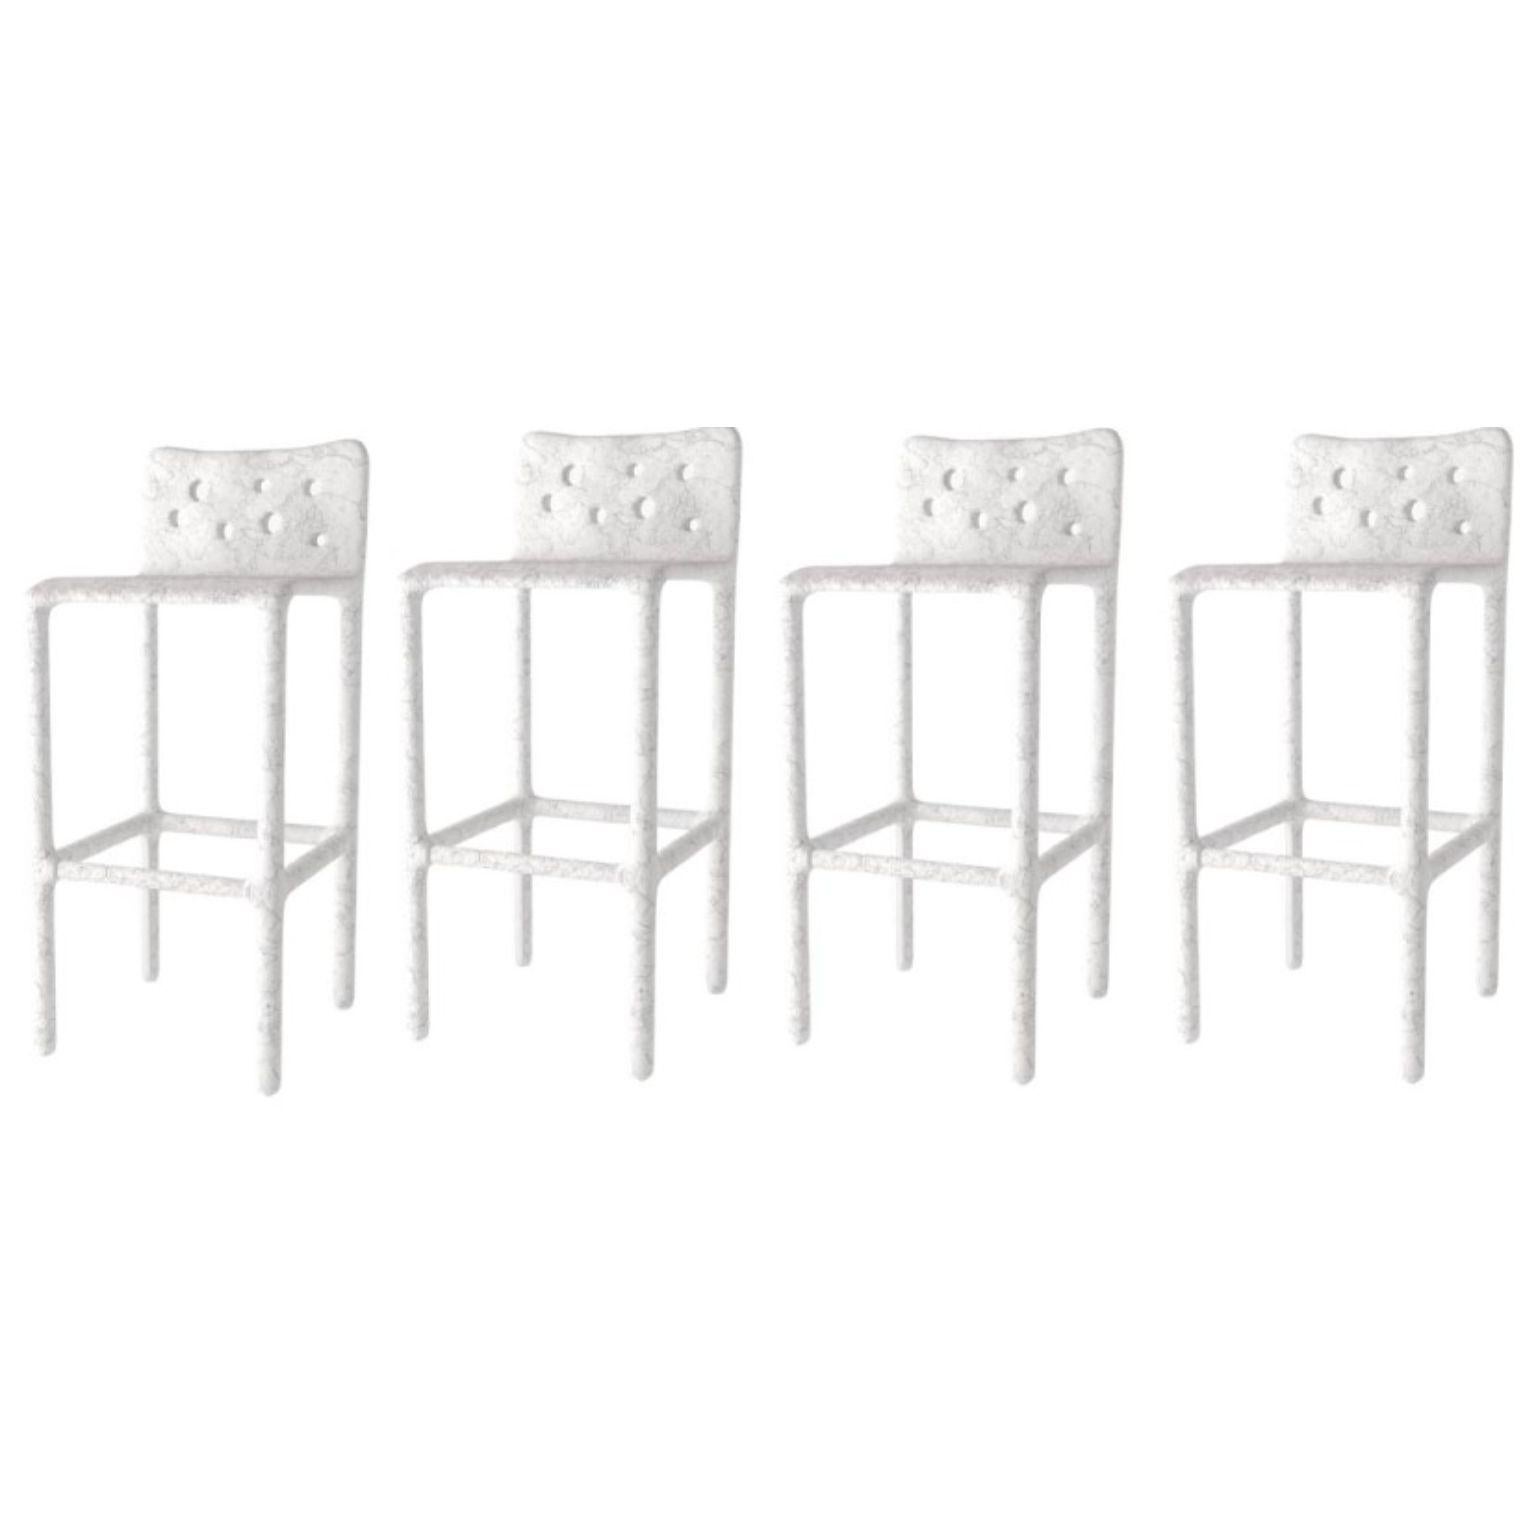 Ensemble de 4 chaises d'extérieur blanches sculptées de style contemporain par Faina
Design : Victoriya Yakusha
MATERIAL : acier, caoutchouc de lin, biopolymère, cellulose.
Dimensions : Hauteur : 106 x Largeur : 45 x Largeur de la place assise : 49